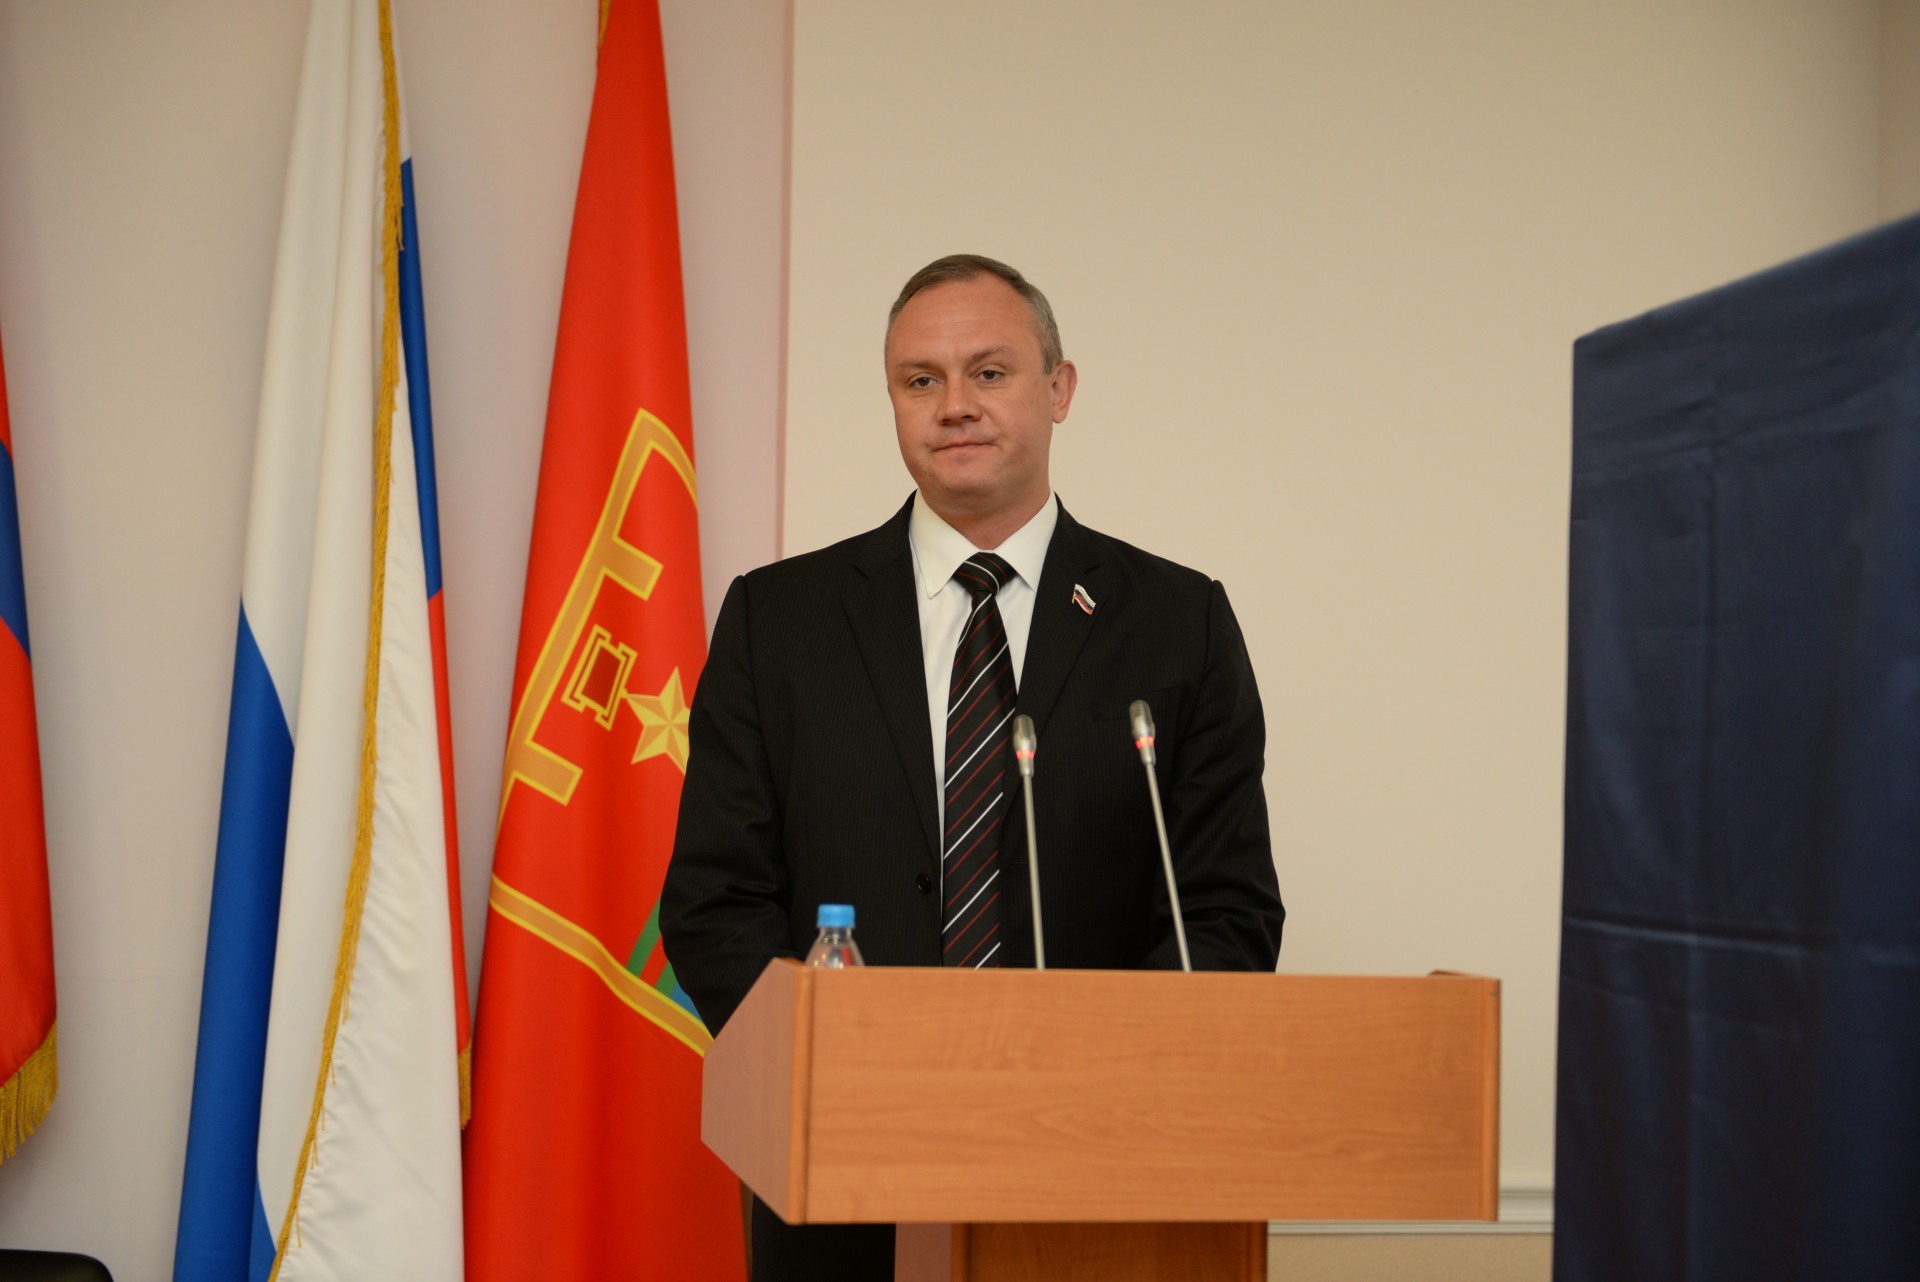 Вице-губернатор Волгоградской области Андрей Косолапов добровольно ушел в отставку